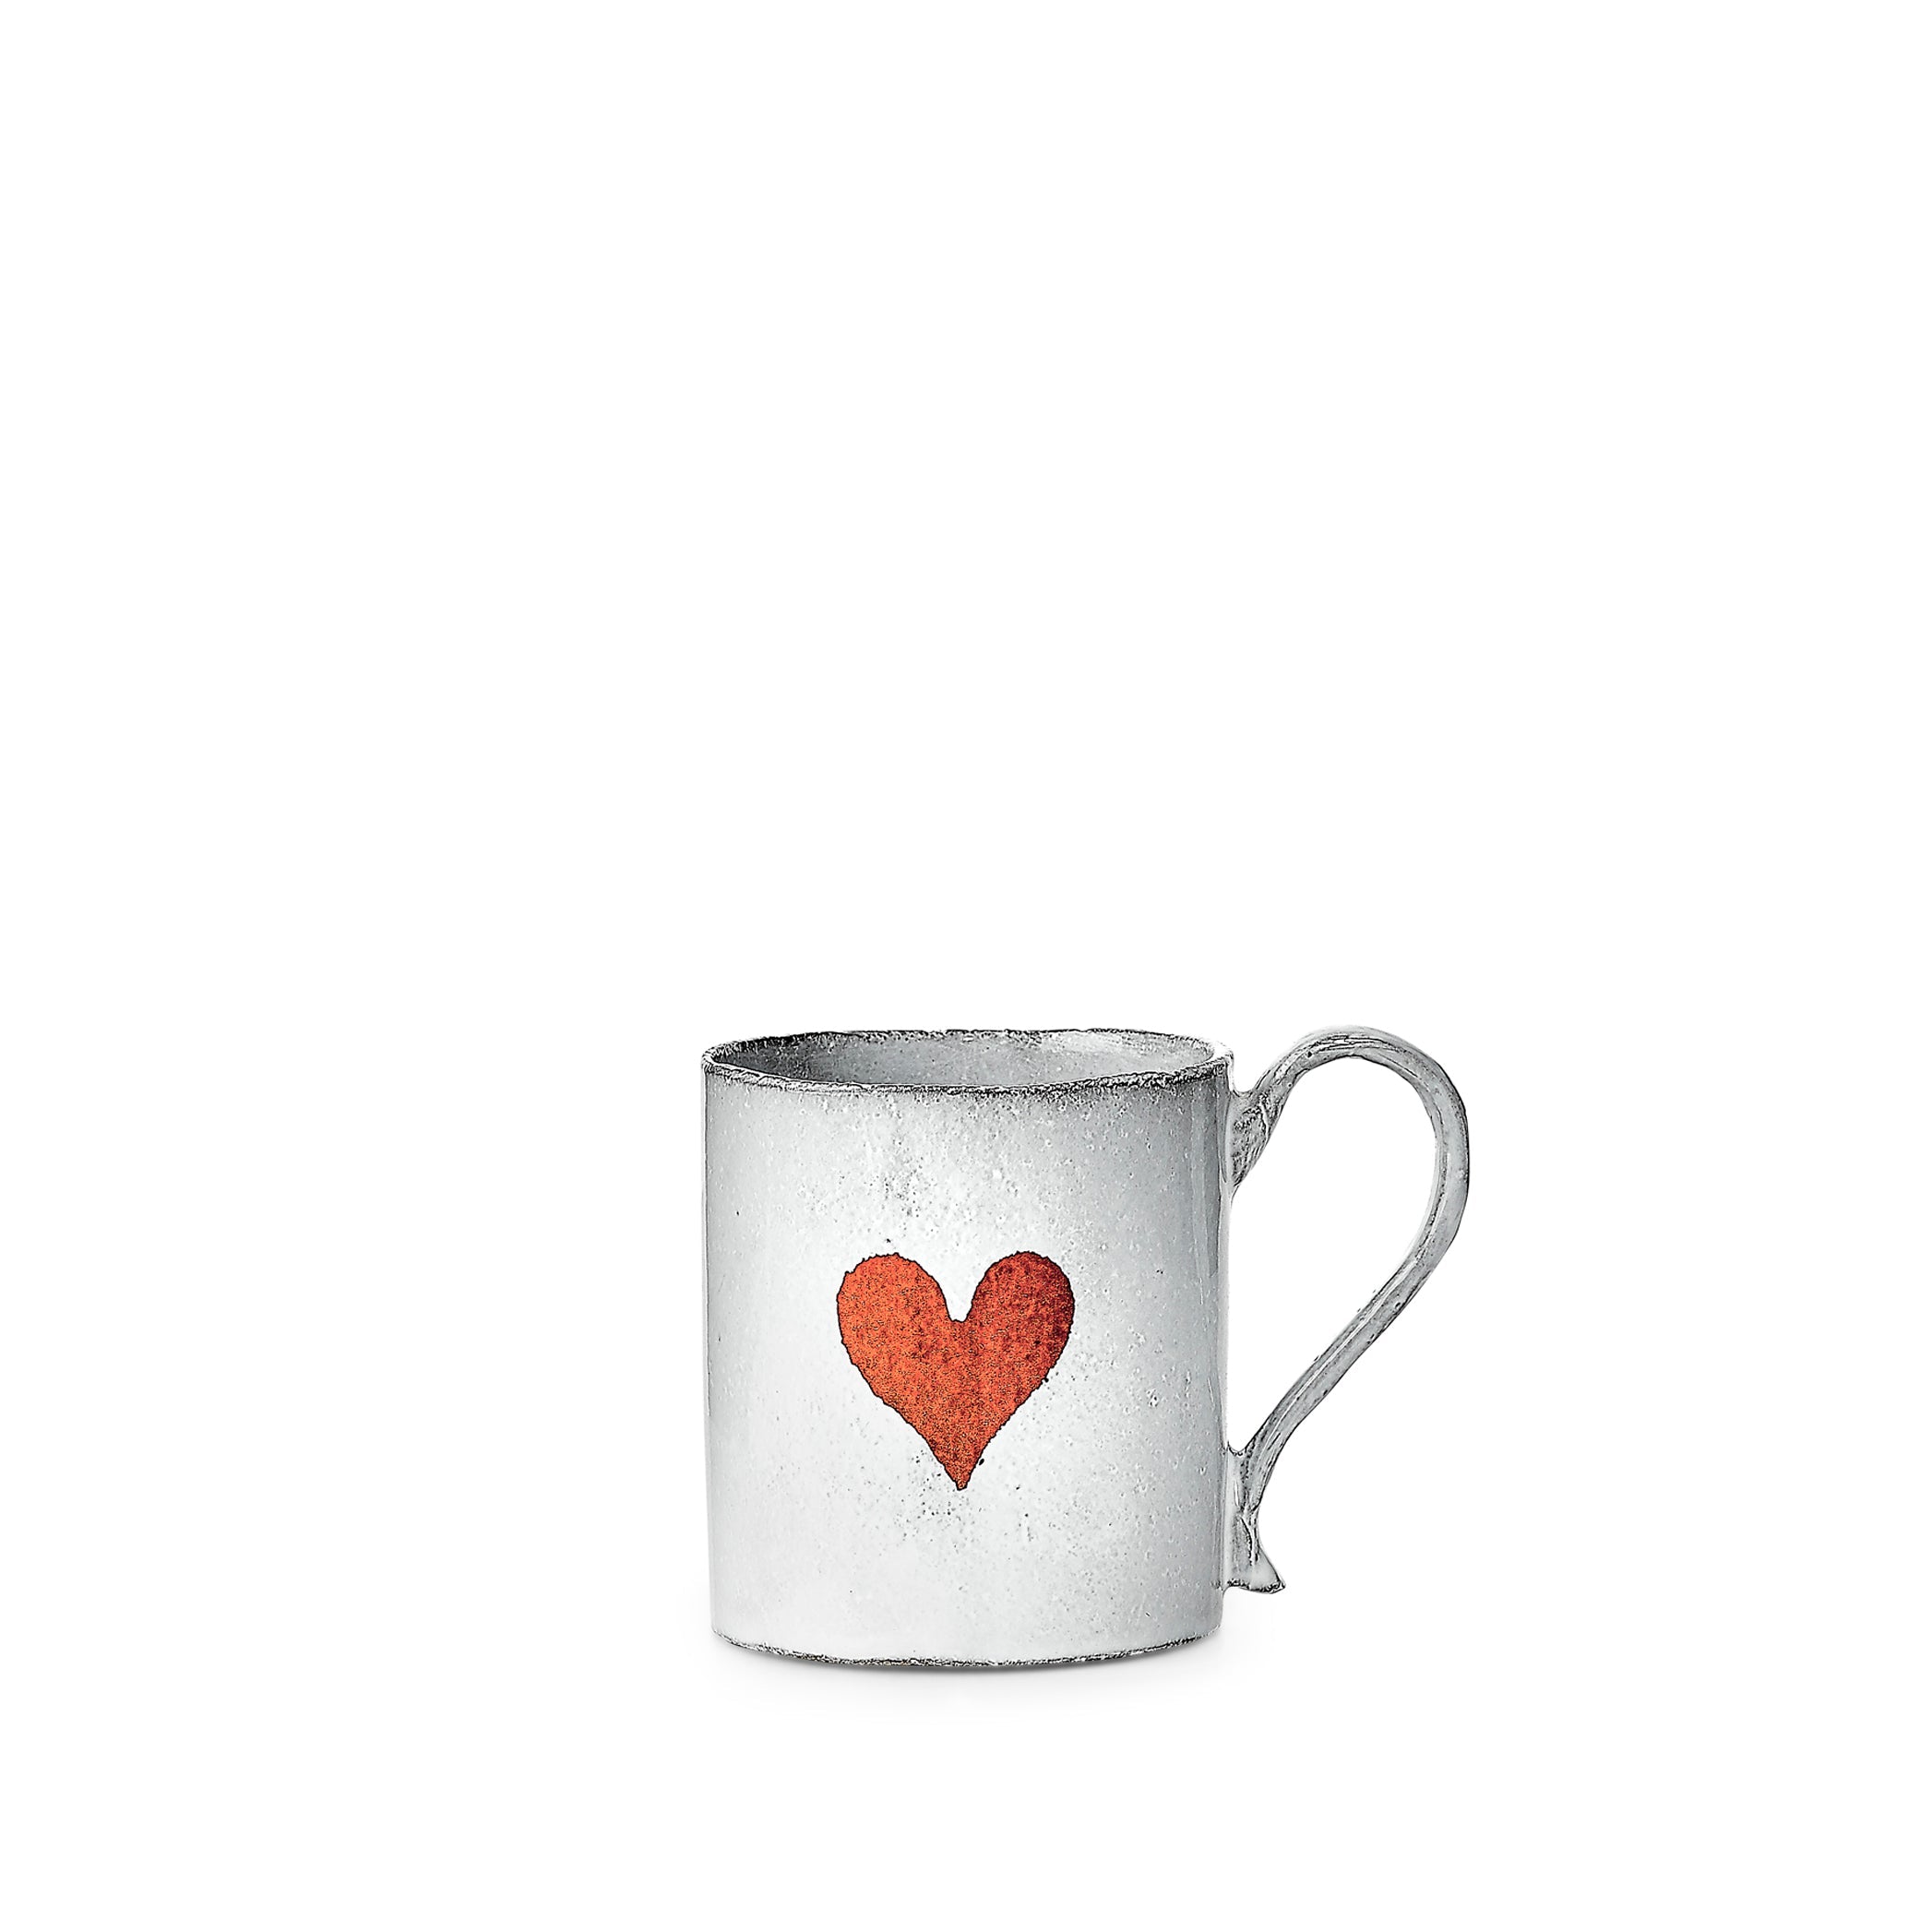 Heart Mug by Astier de Villatte, 10cm